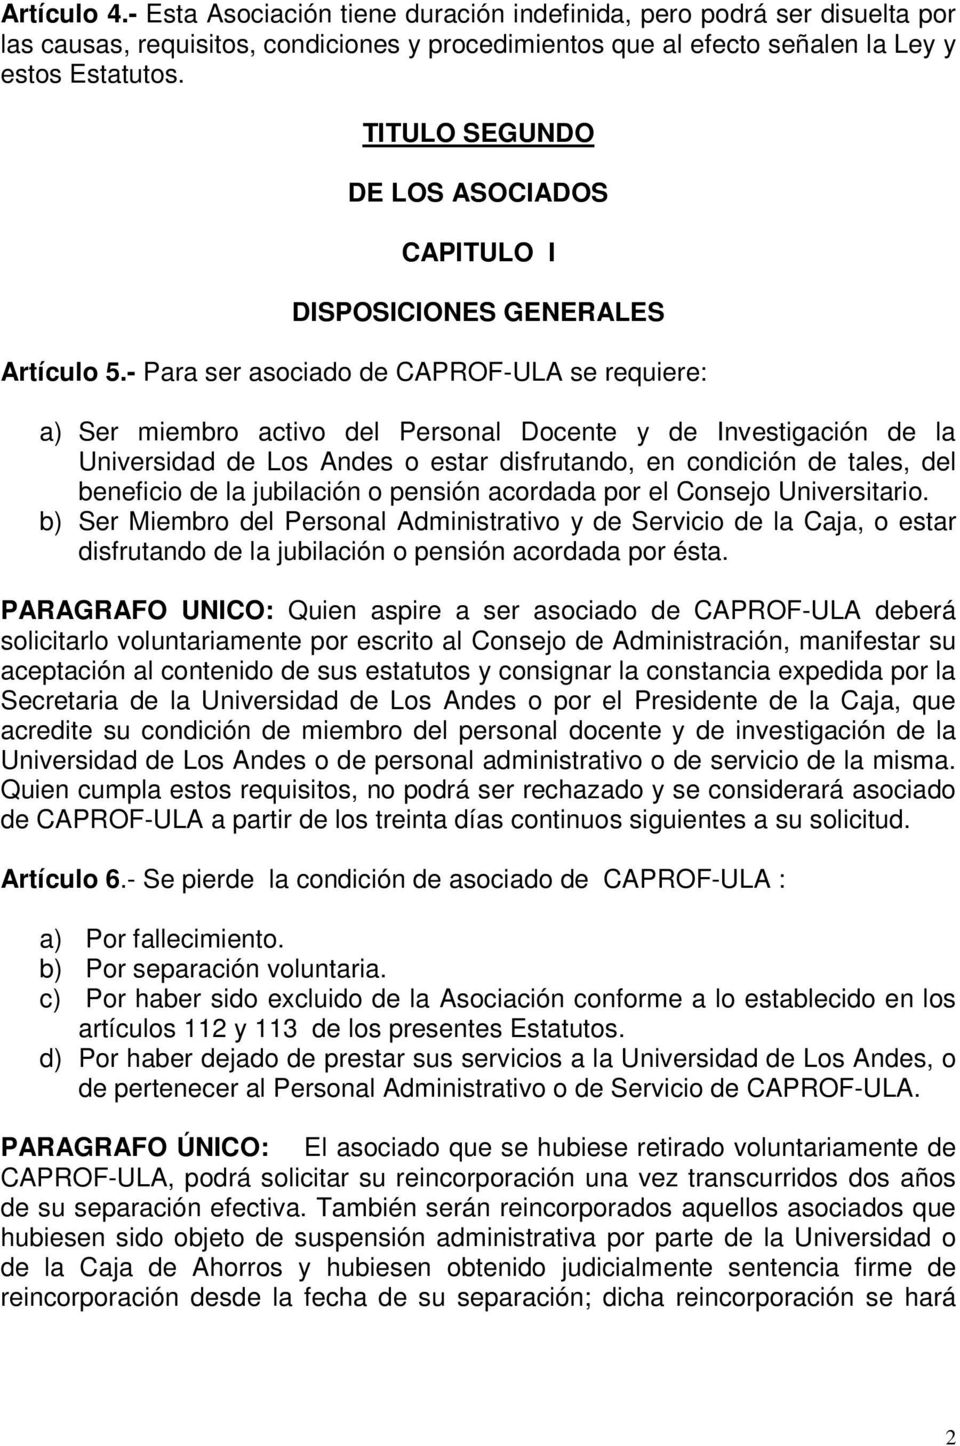 - Para ser asociado de CAPROF-ULA se requiere: a) Ser miembro activo del Personal Docente y de Investigación de la Universidad de Los Andes o estar disfrutando, en condición de tales, del beneficio